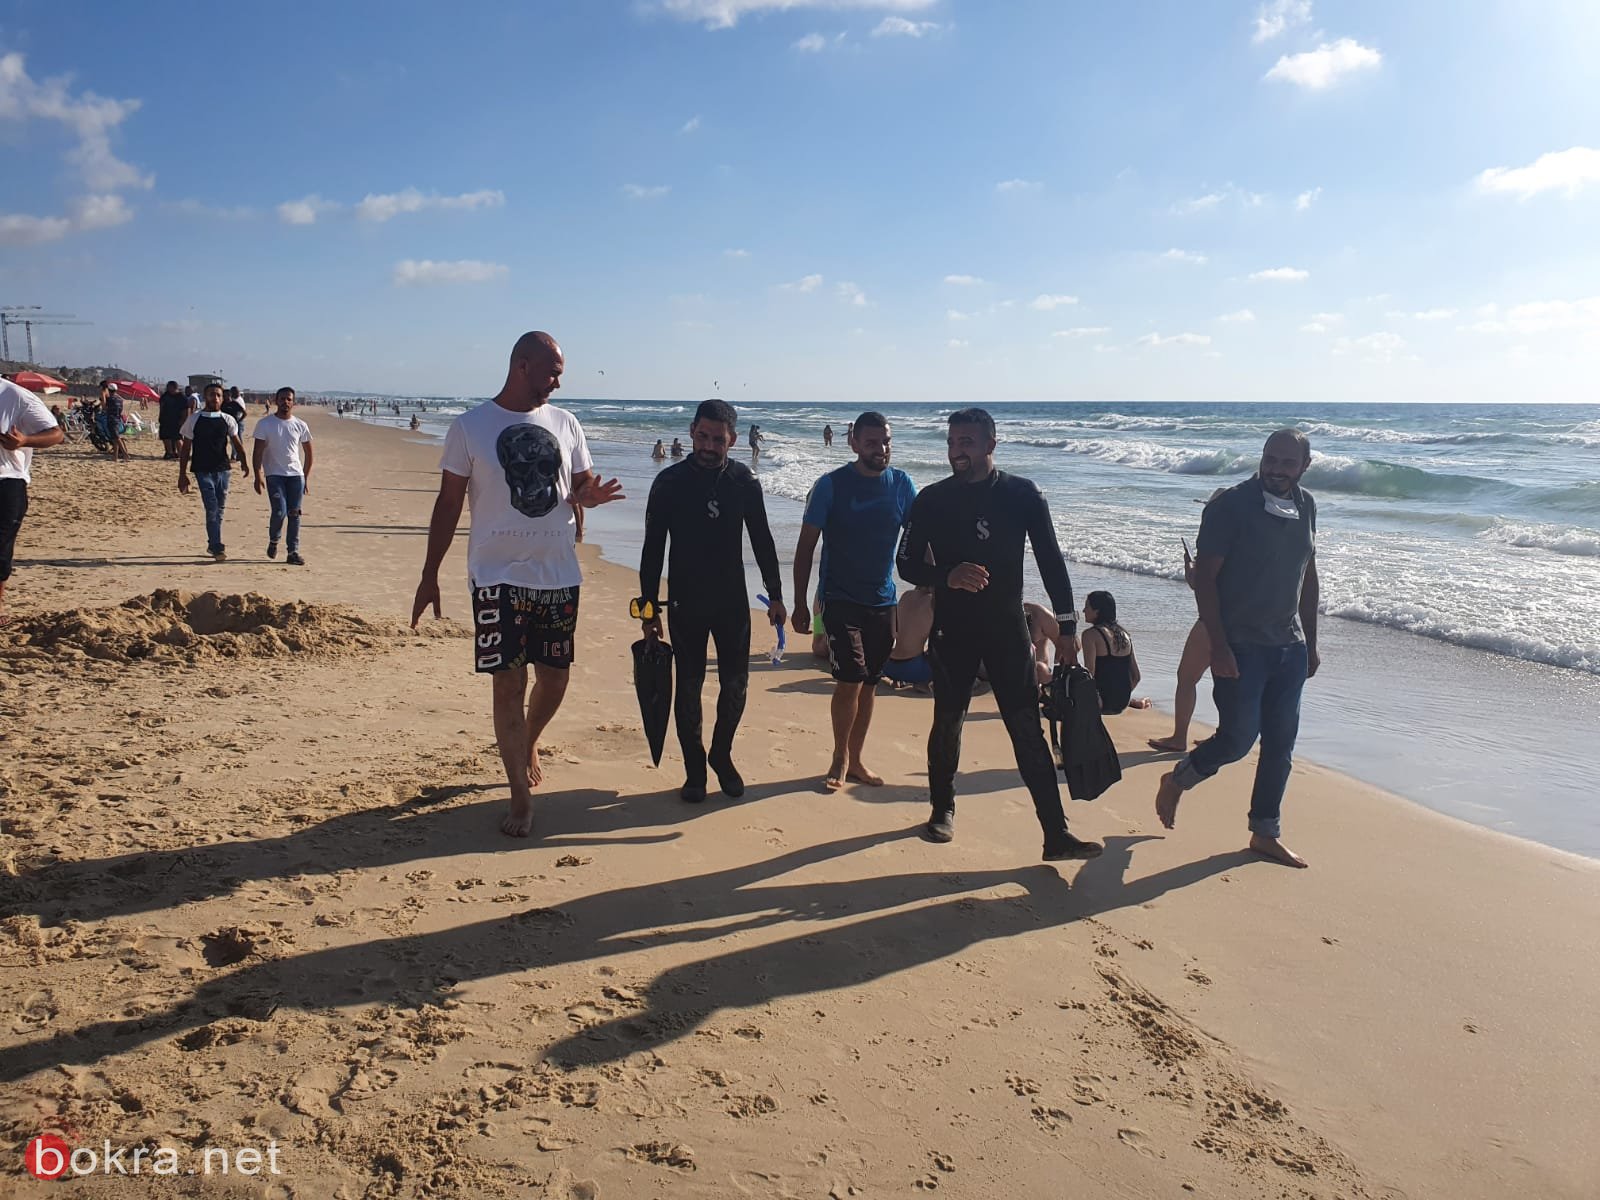 عشرات الشبان الان متواجدون أمام ساحل شاطئ (بات يام) للعثور على الشاب المفقود.-2